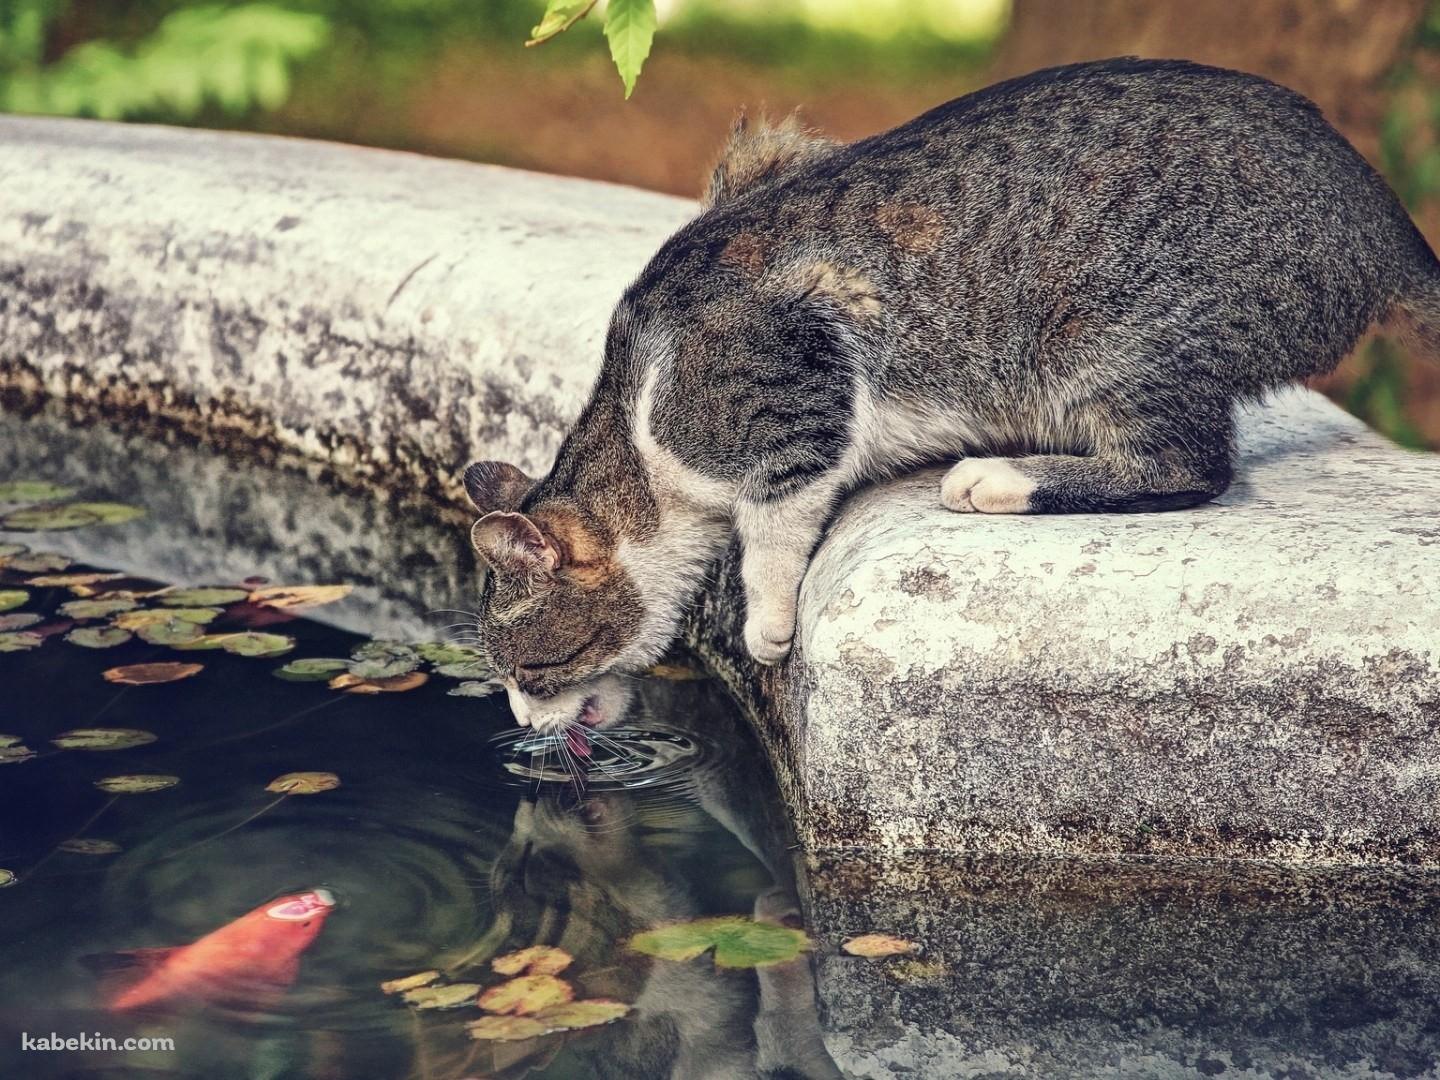 水飲む猫と鯉の壁紙(1440px x 1080px) 高画質 PC・デスクトップ用